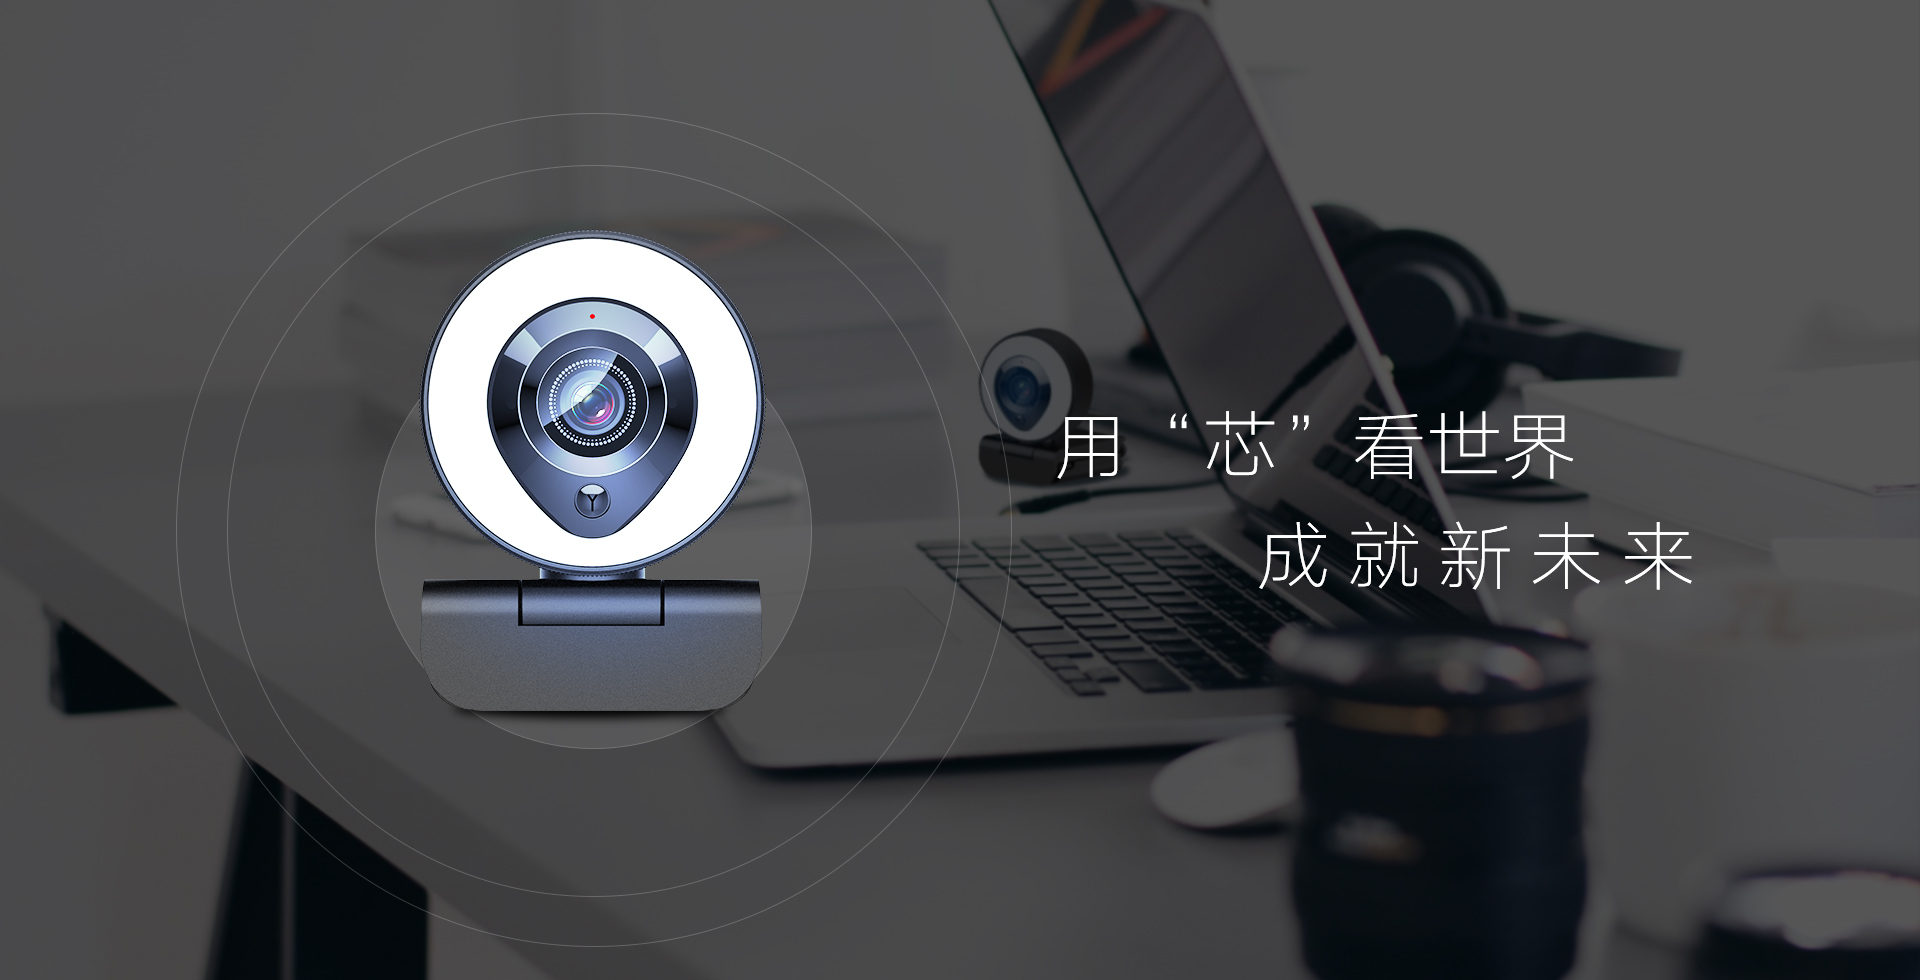 Zhong Xin Chuang Zhan Technology Co., Ltd